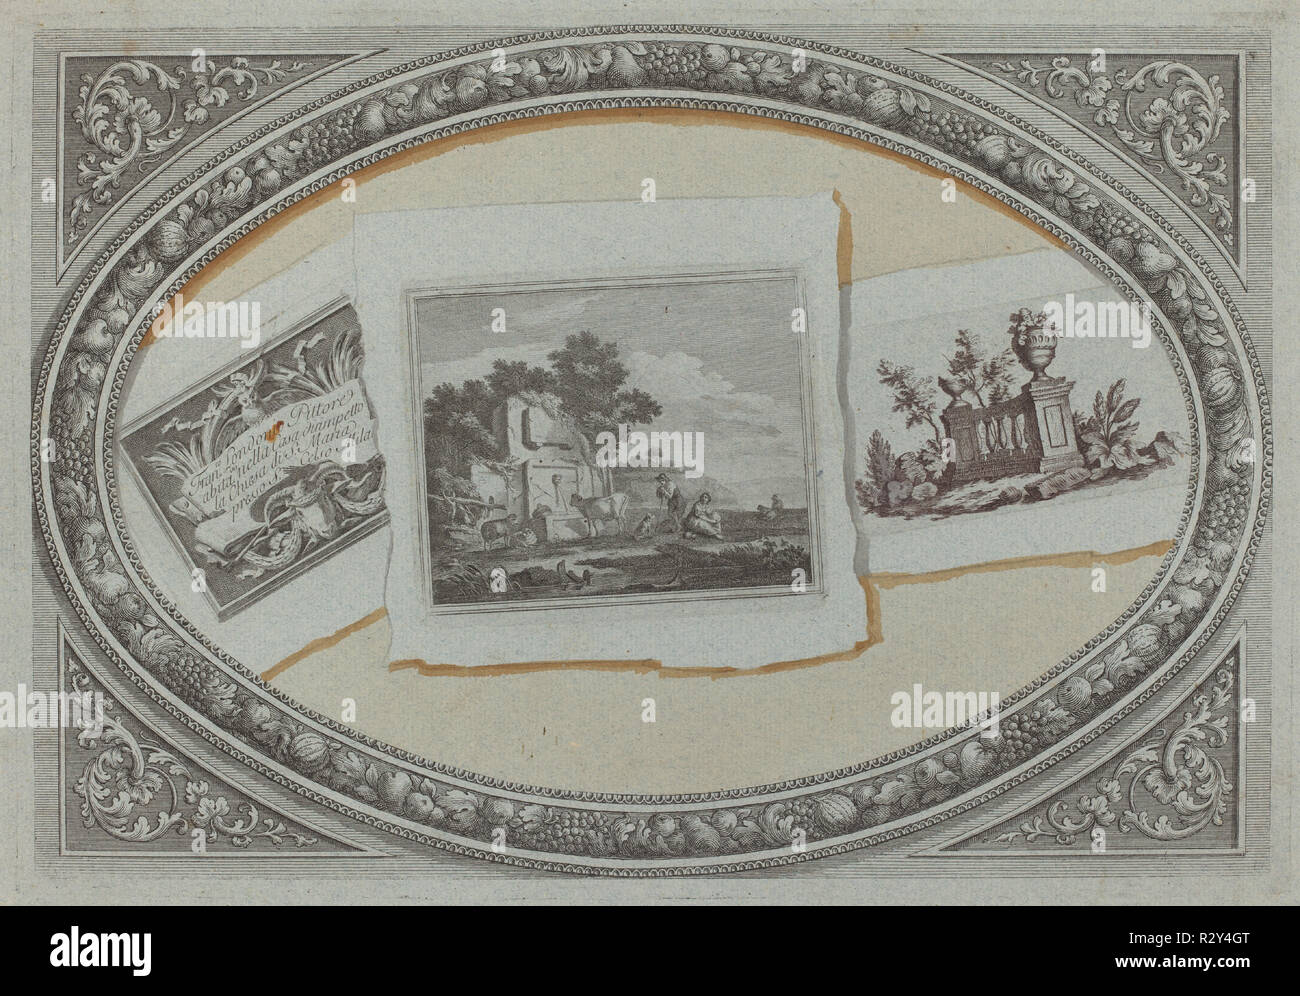 Trompe-l'Oeil : Imprime avec Londonio's Carte d'appel, à l'aide de cuivres originaux. En date du : ch. 1790. Dimensions : Plateau : 25,8 x 37,5 cm (10 3/16 x 14 3/4 in.) : 28,9 x 42,8 Fiche cm (11 3/8 x 16 7/8 in.). Technique : gravure et la gravure imprimée en noir et brun à l'ocre aquarelle sur papier vergé bleu. Musée : National Gallery of Art, Washington DC. Auteur : Milanese 18ème siècle, Francesco Londonio, et Benigno Bossi. Banque D'Images